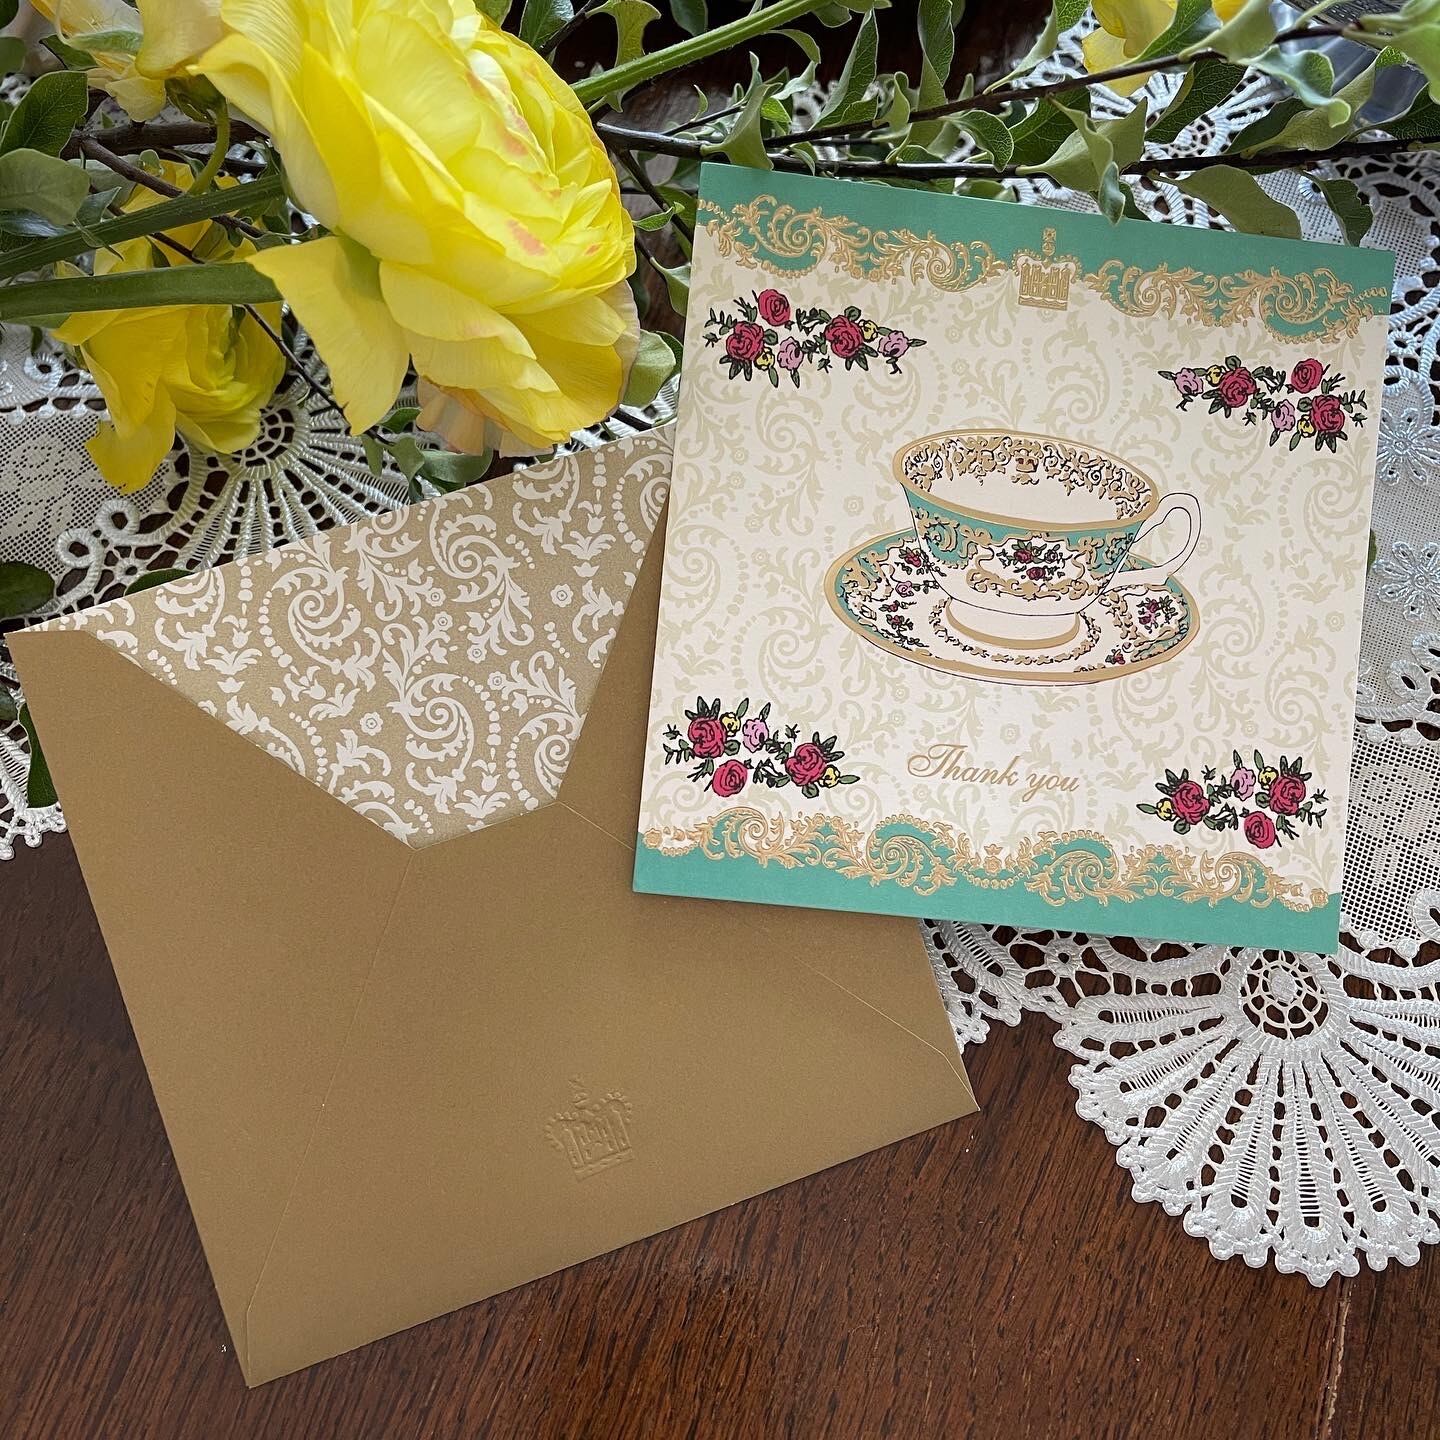 『Royal Palace』カードBOX入　2種 8枚入 Royal Palace thank you cards in a box